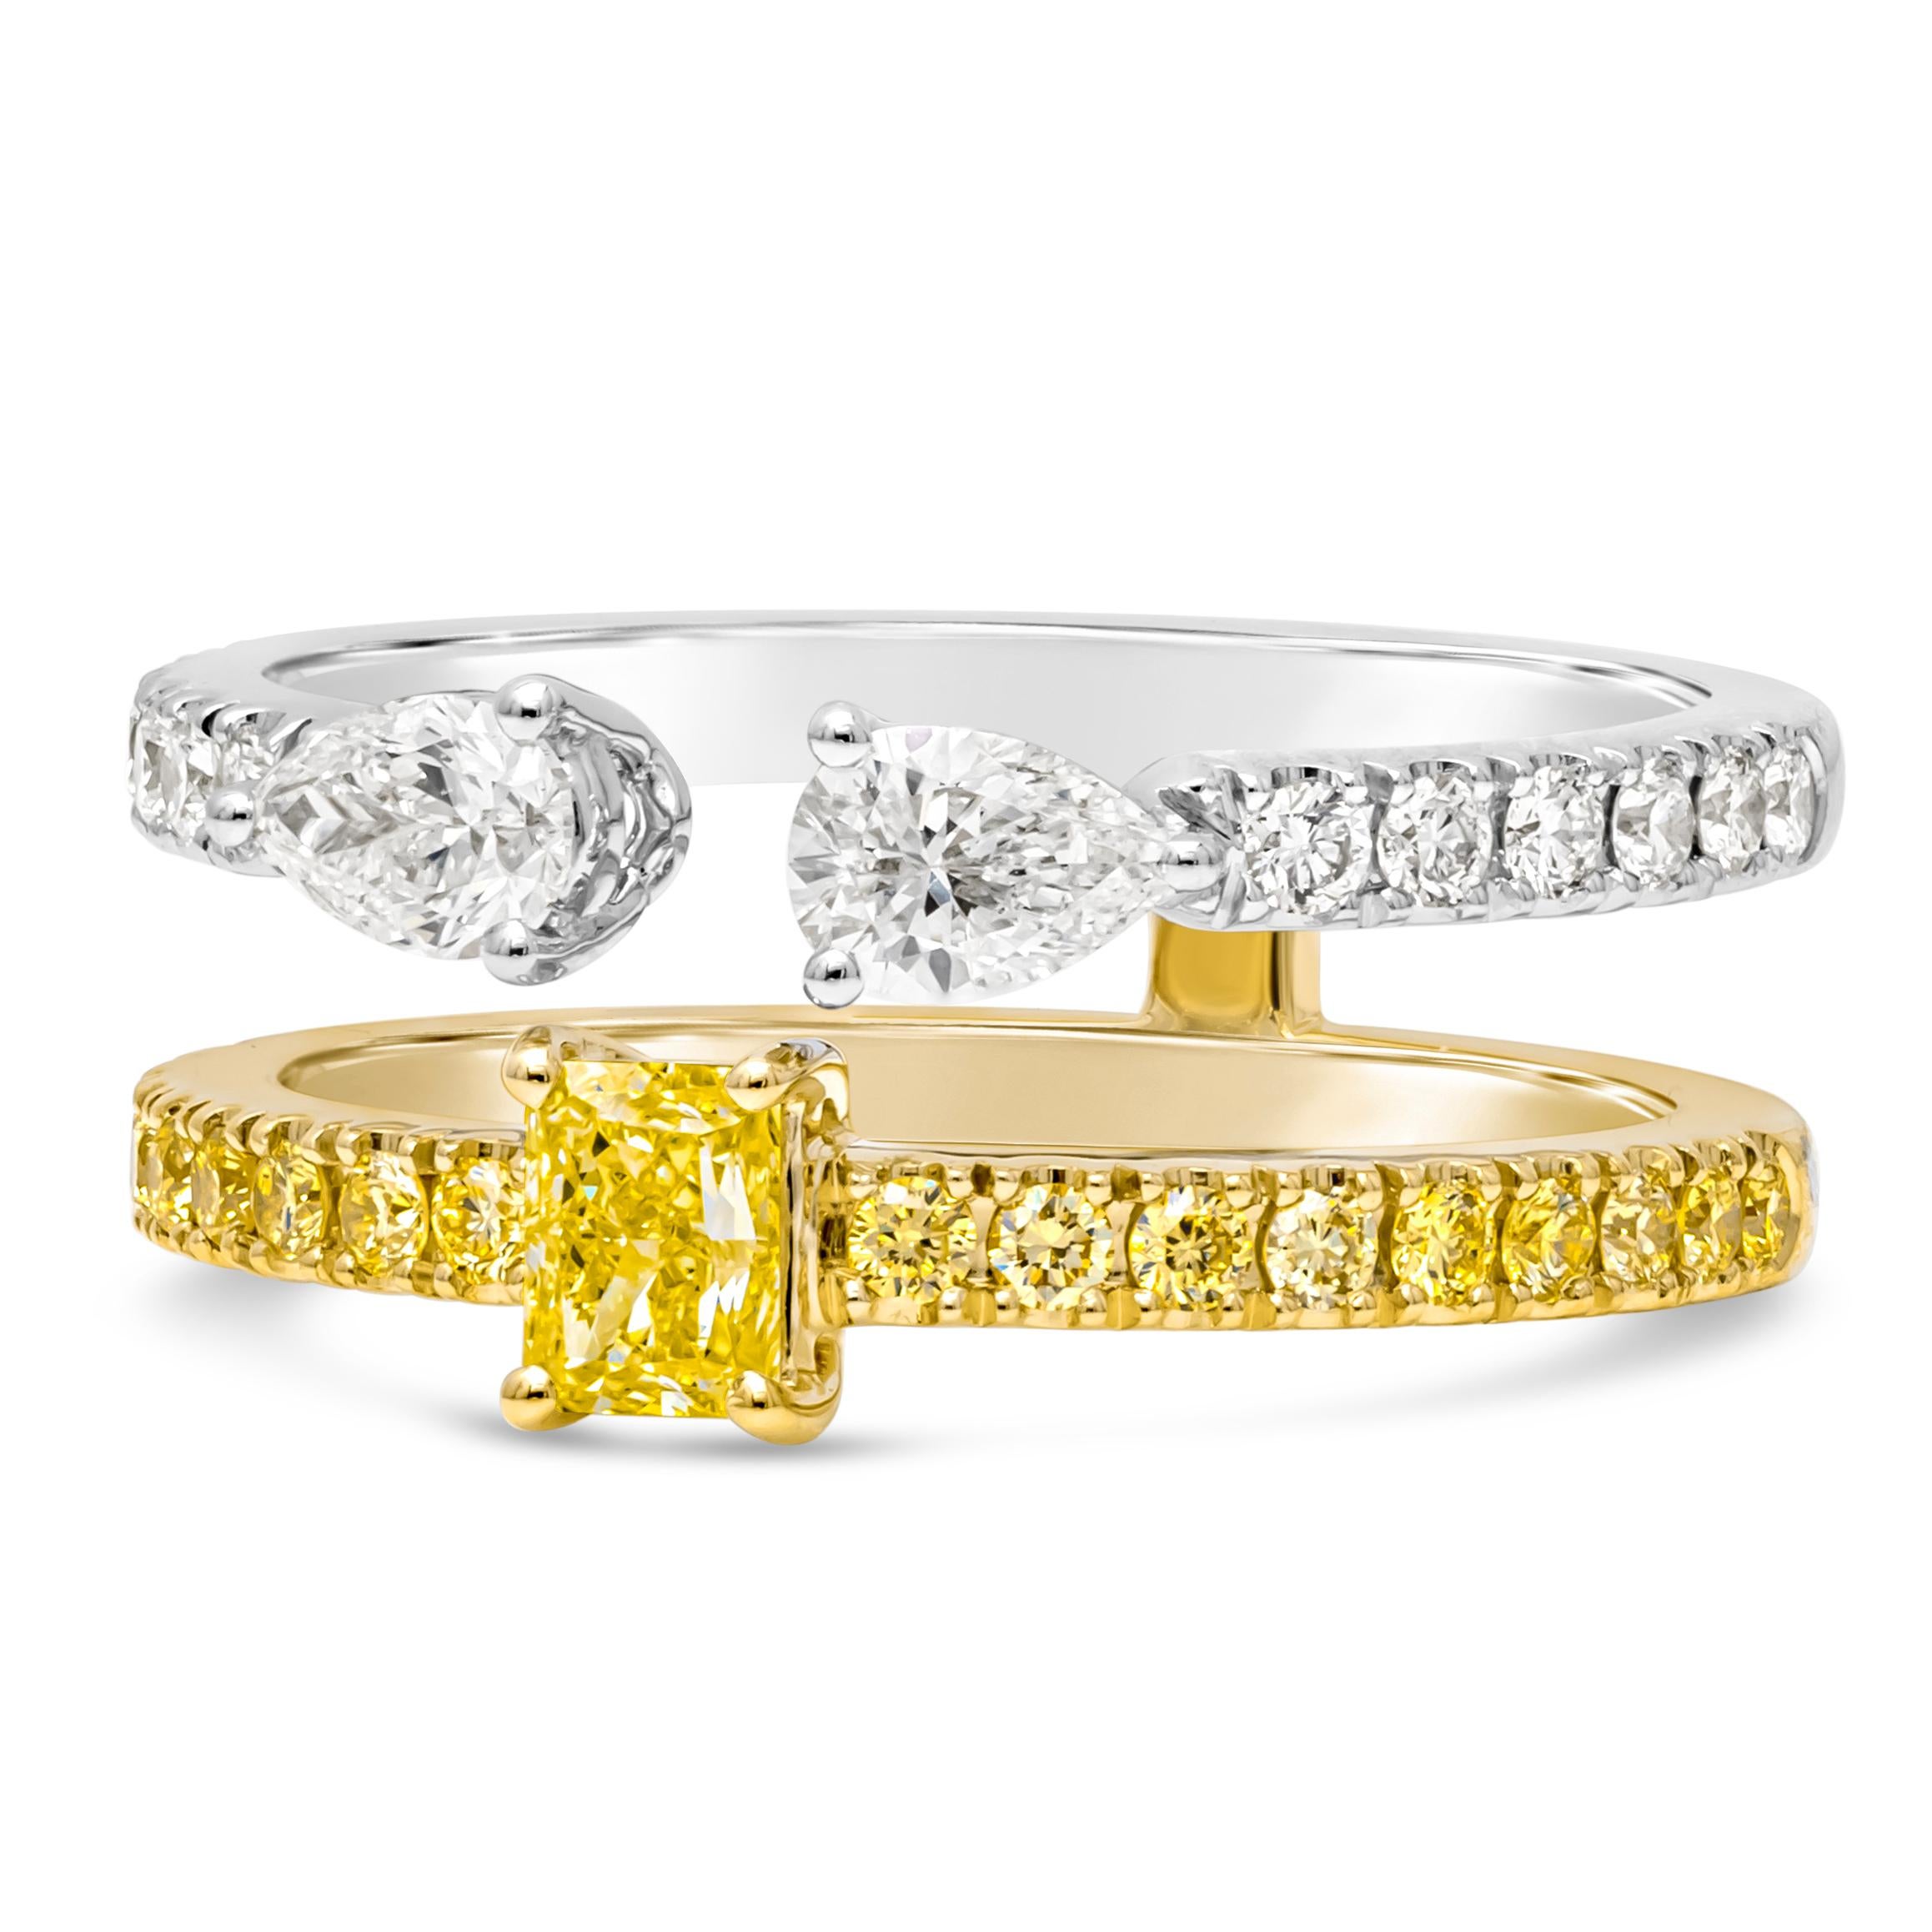 Cette exquise bague de mode à double anneau présente une combinaison étonnante d'élégance et d'éclat. Un anneau présente un diamant central de couleur émeraude, accentué par des diamants ronds de couleur fantaisie en pavé, sertis dans un or jaune 18